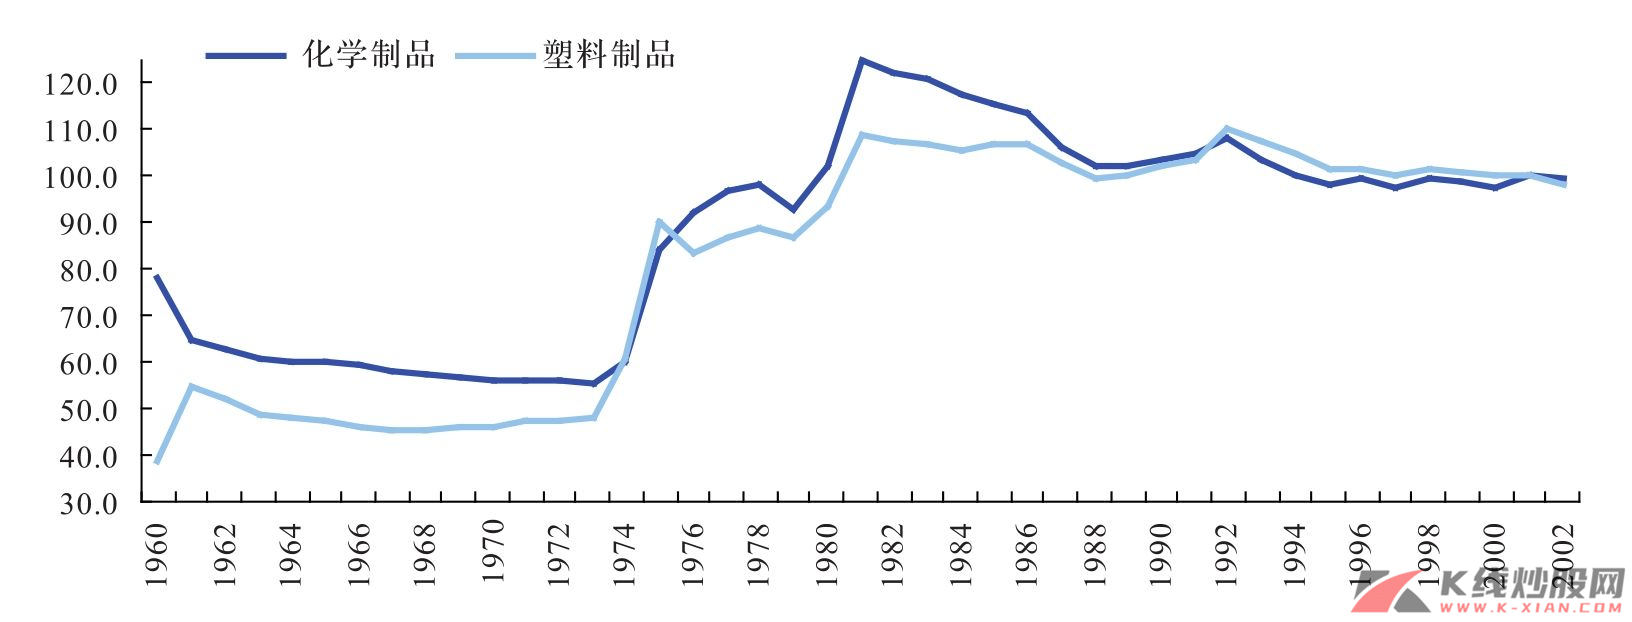 日本化学制品和塑料制品价格指数（2000年=100）